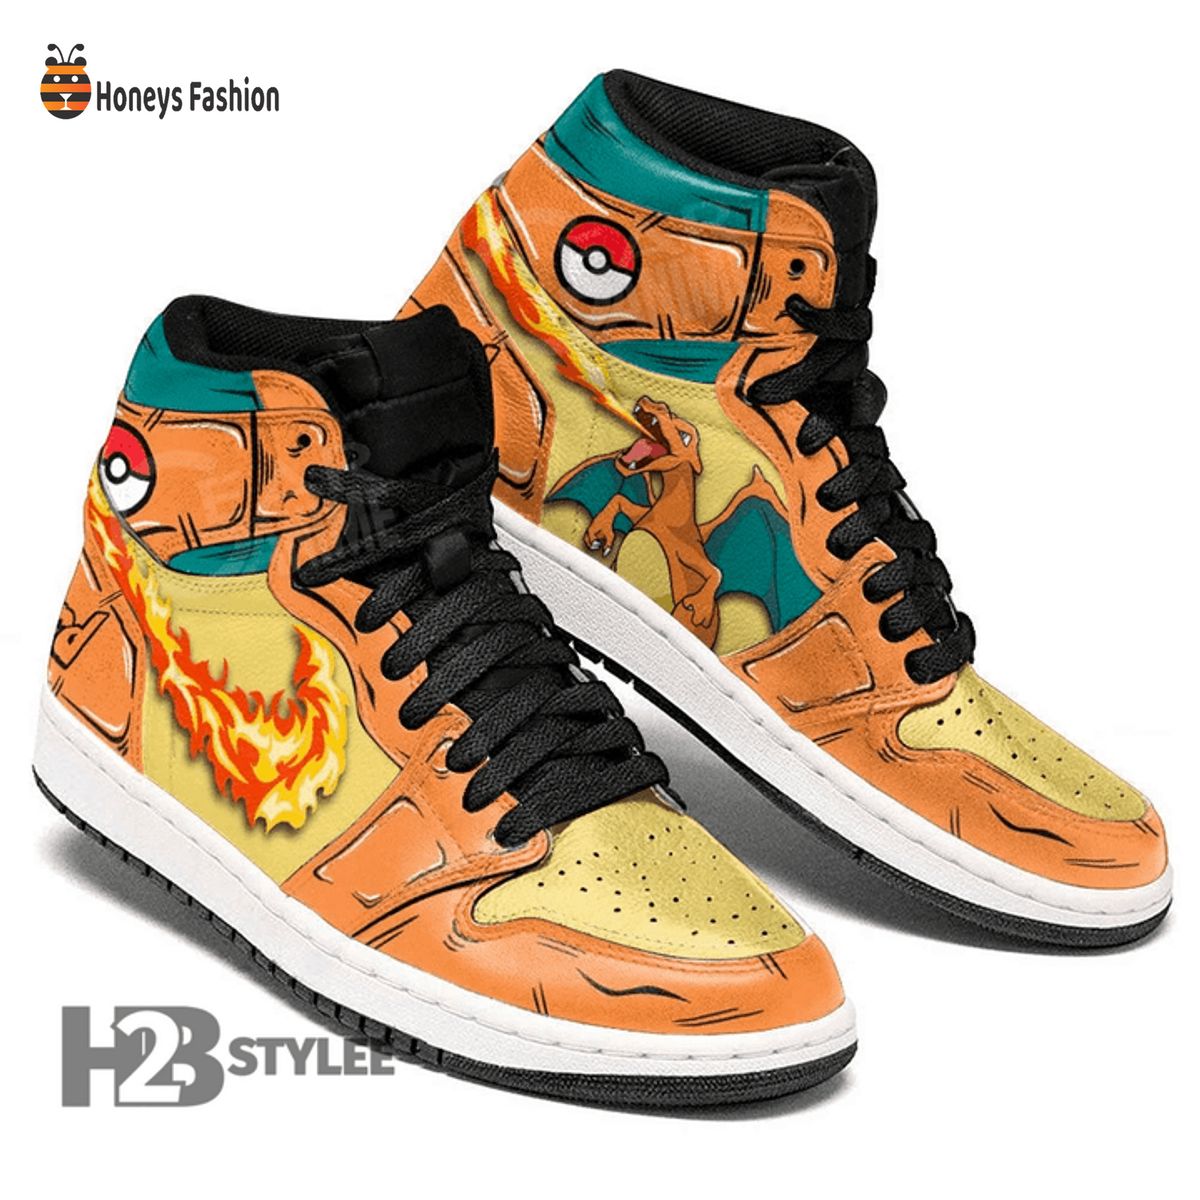 Charizard Lizardon Blaze Fire Pokemon Air Jordan High Sneaker